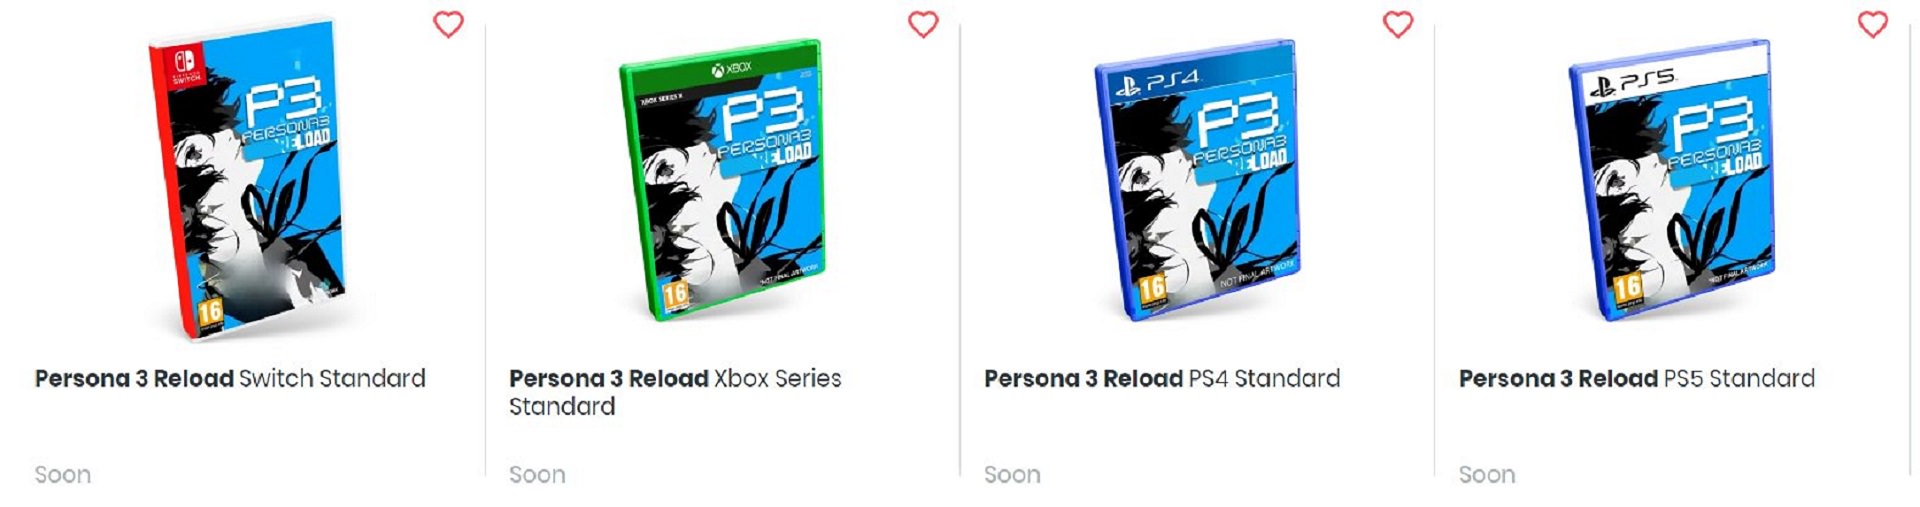 لیست نسخه های پلی استیشن و نینتندو سوییچ Persona 3 Reload